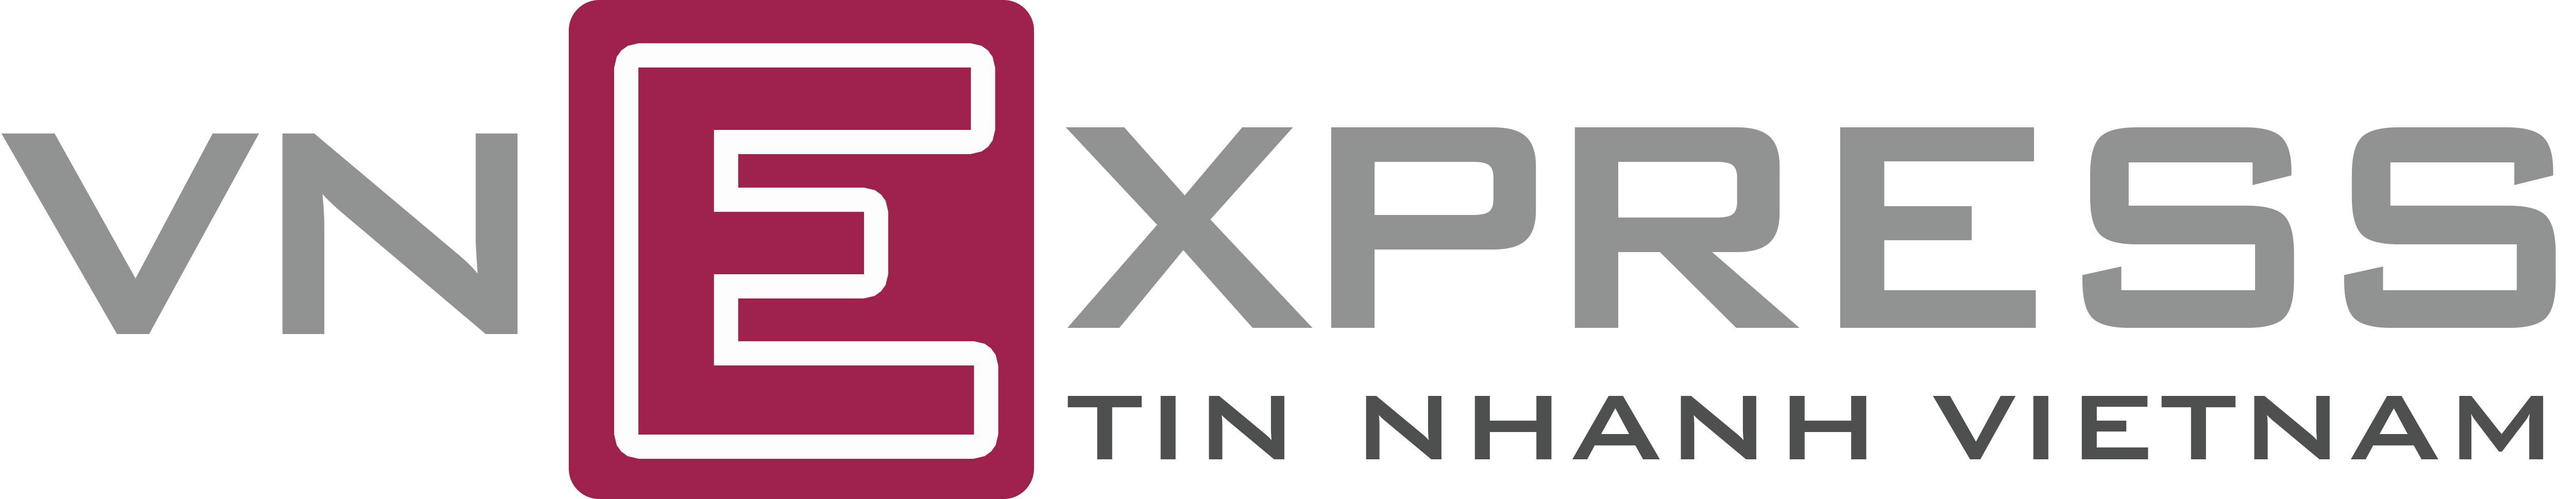 VnExpress Logo 